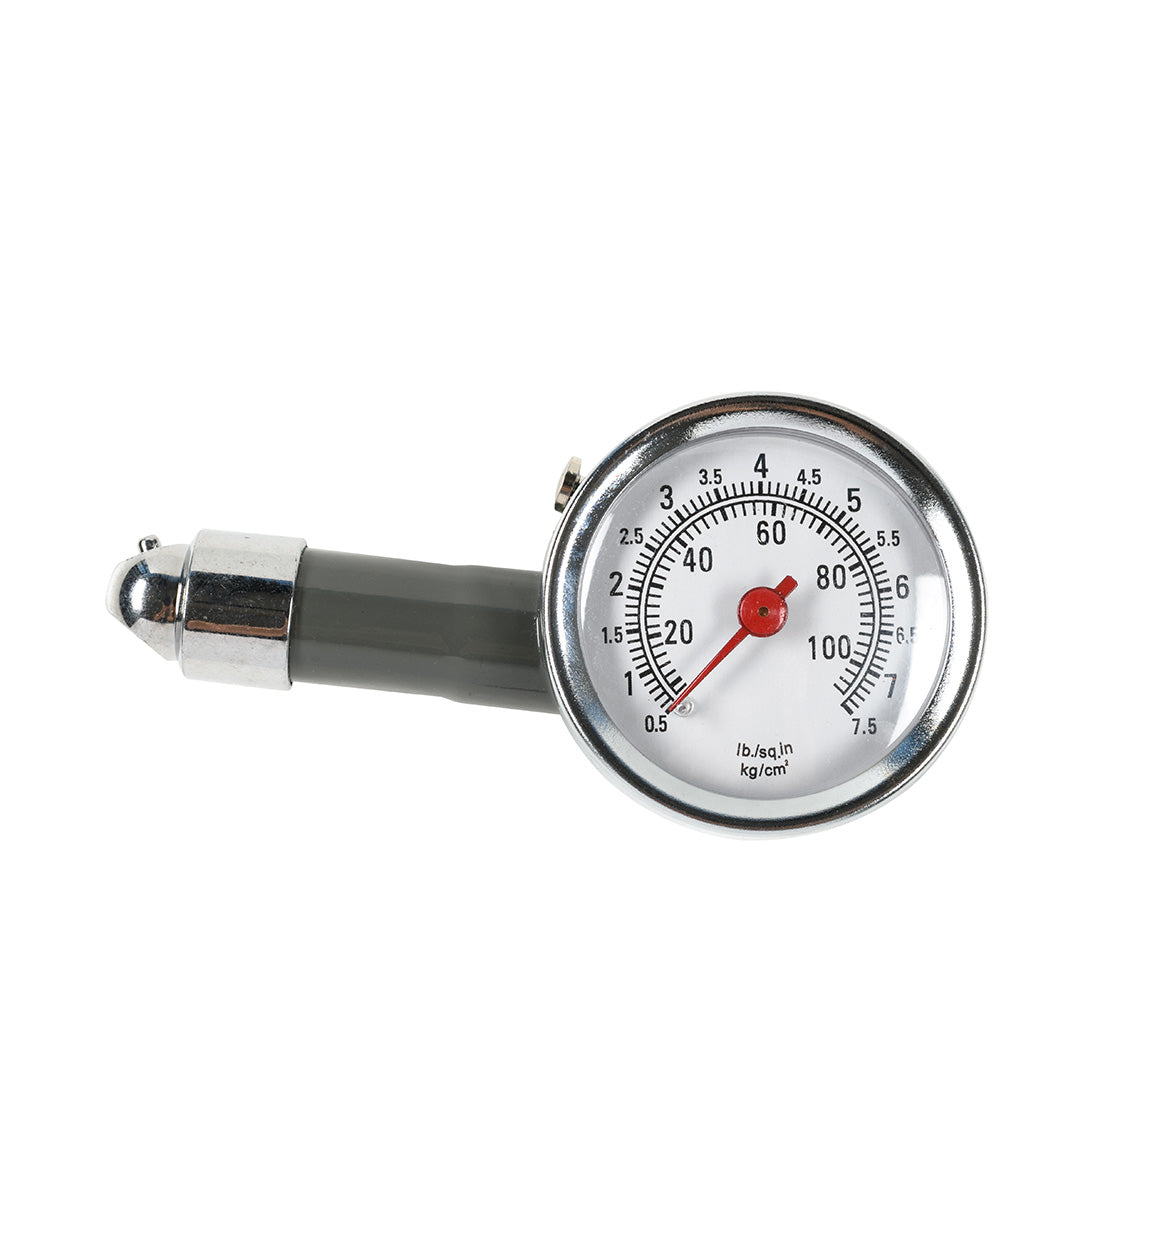 HOONIGAN UNDER PRESSURE air pressure gauge